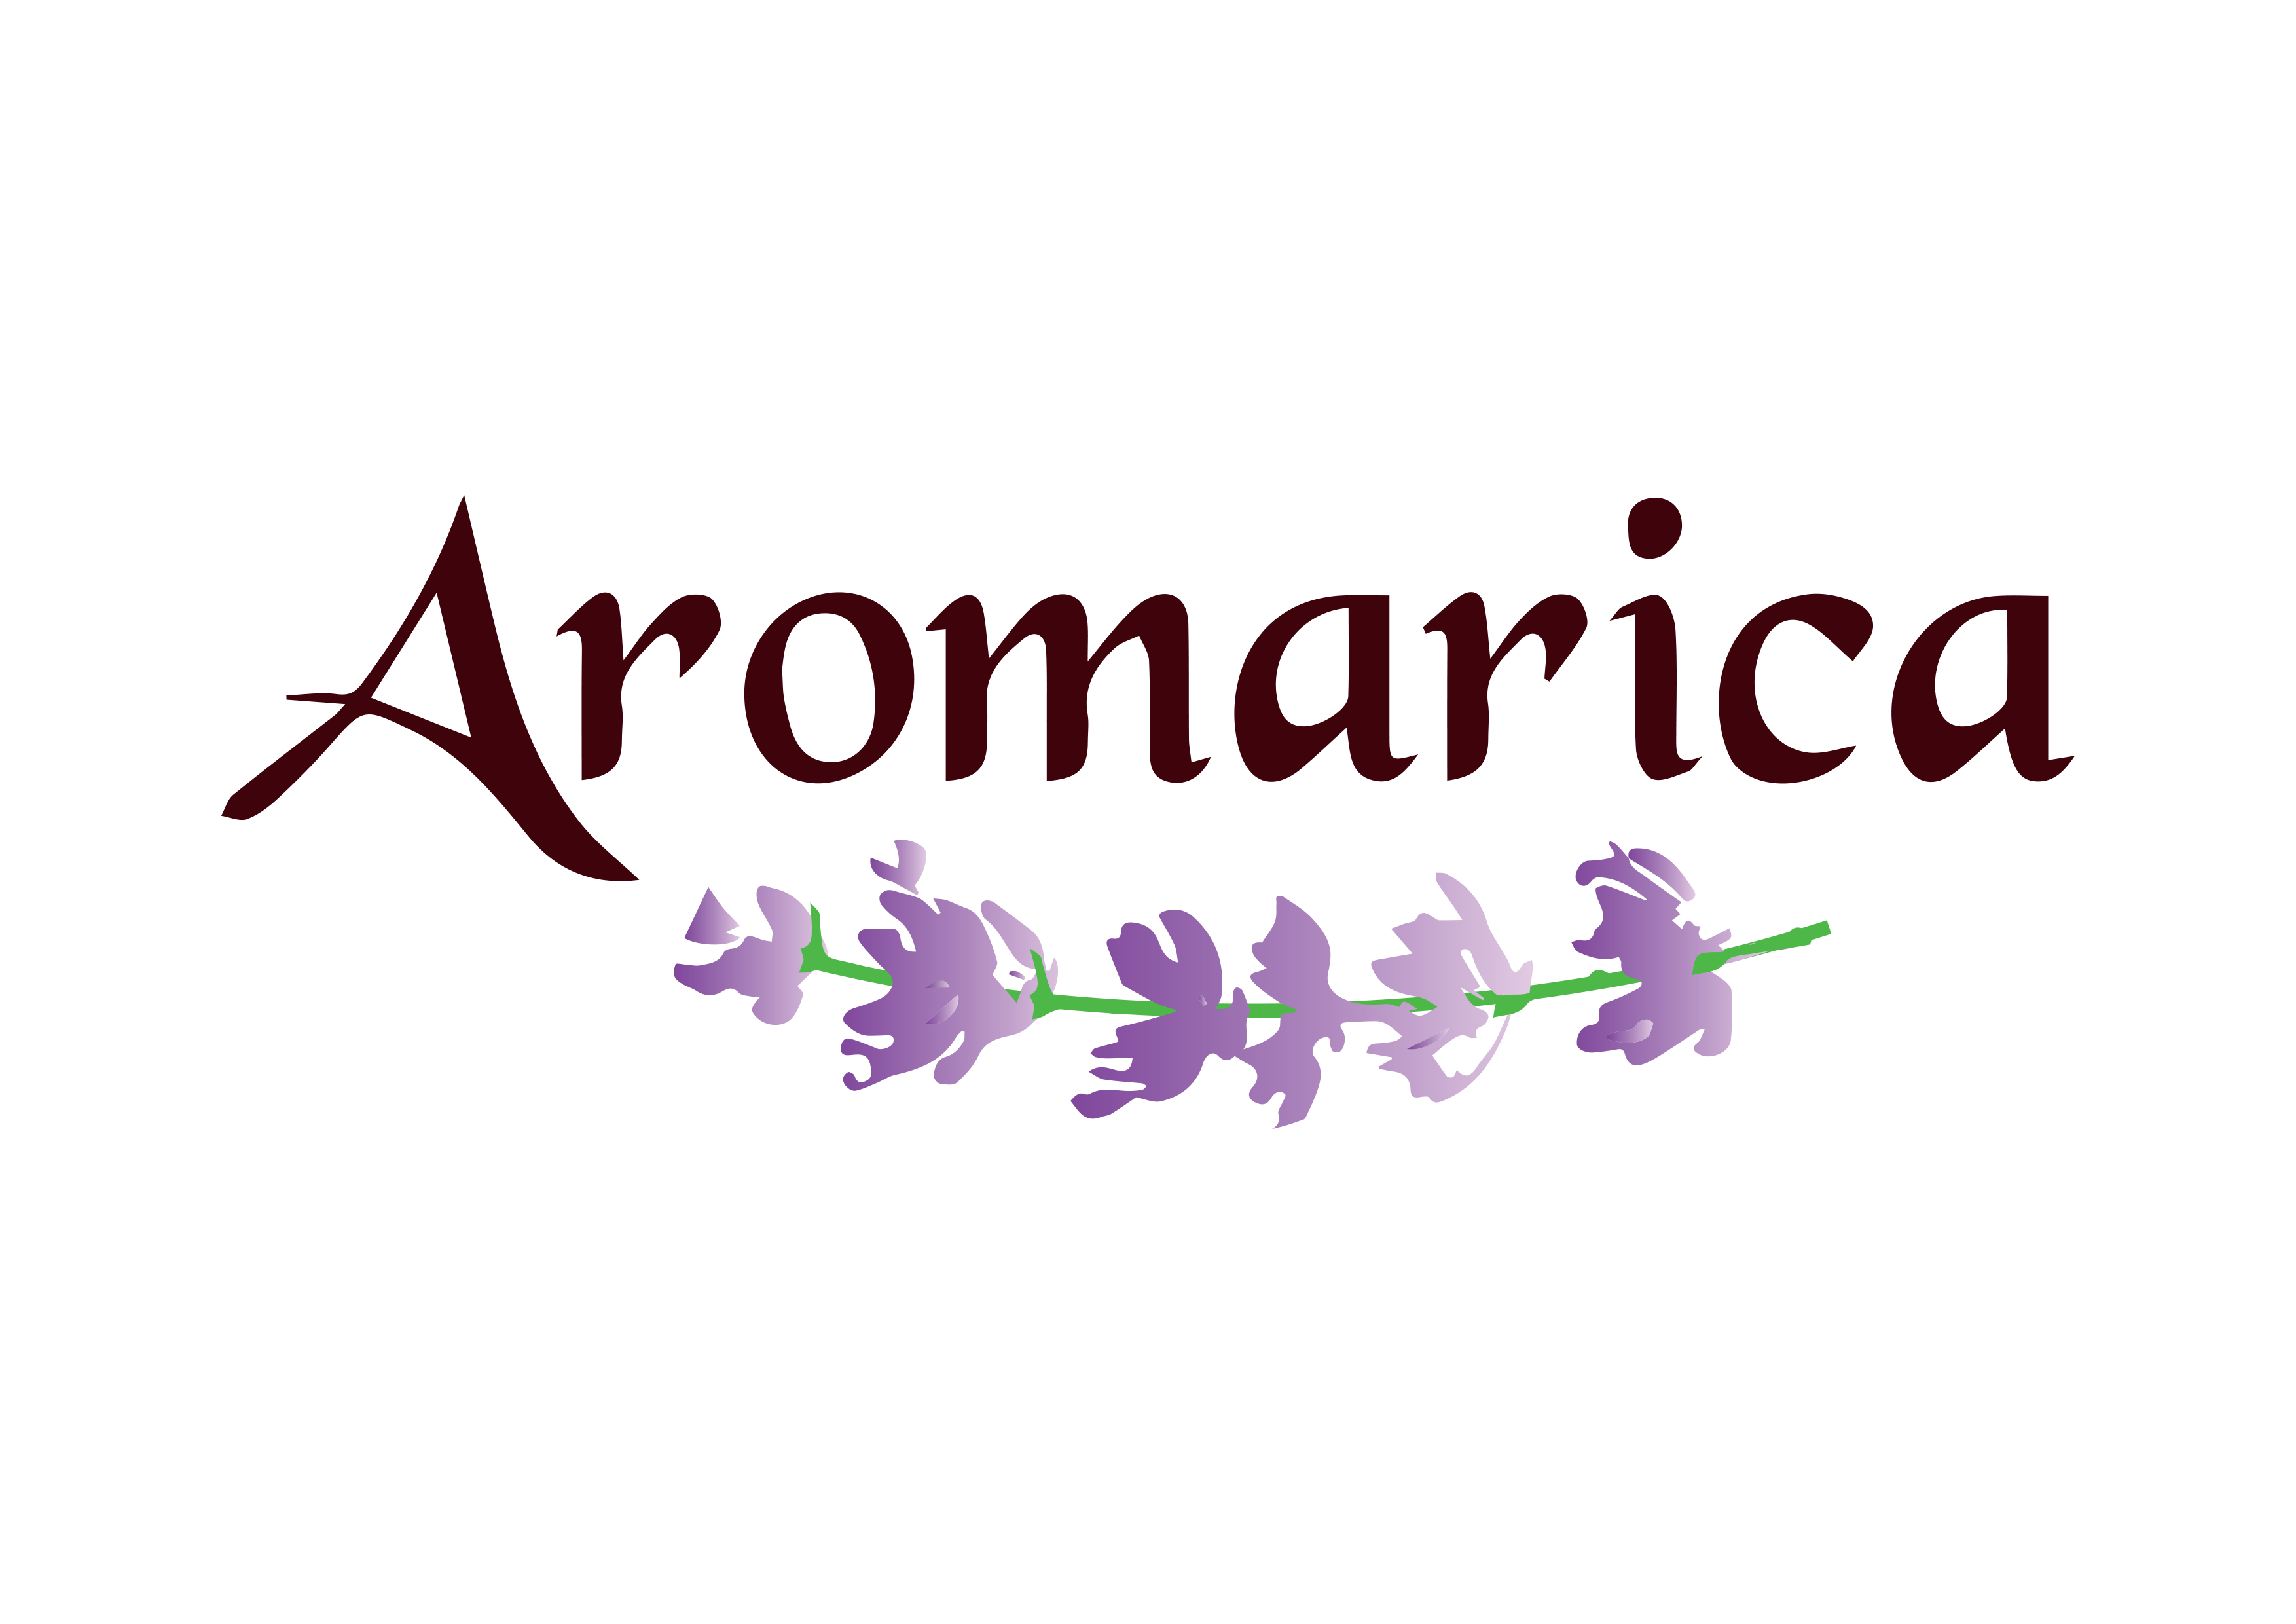 Aromarica